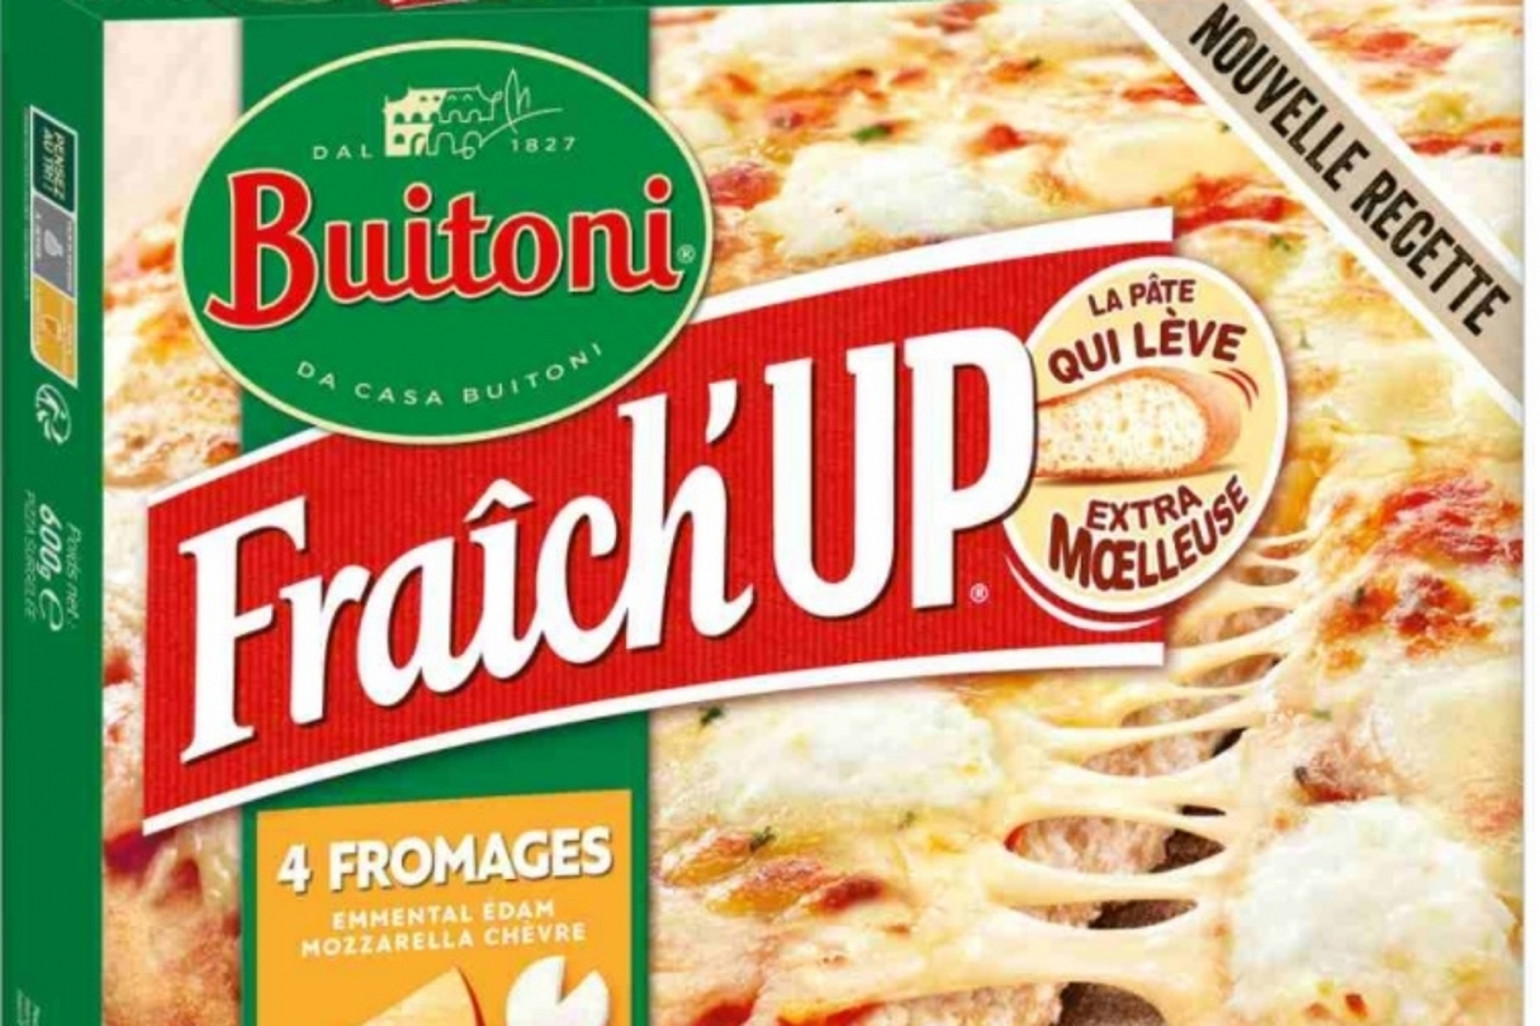 Pizza Buitoni fresh up